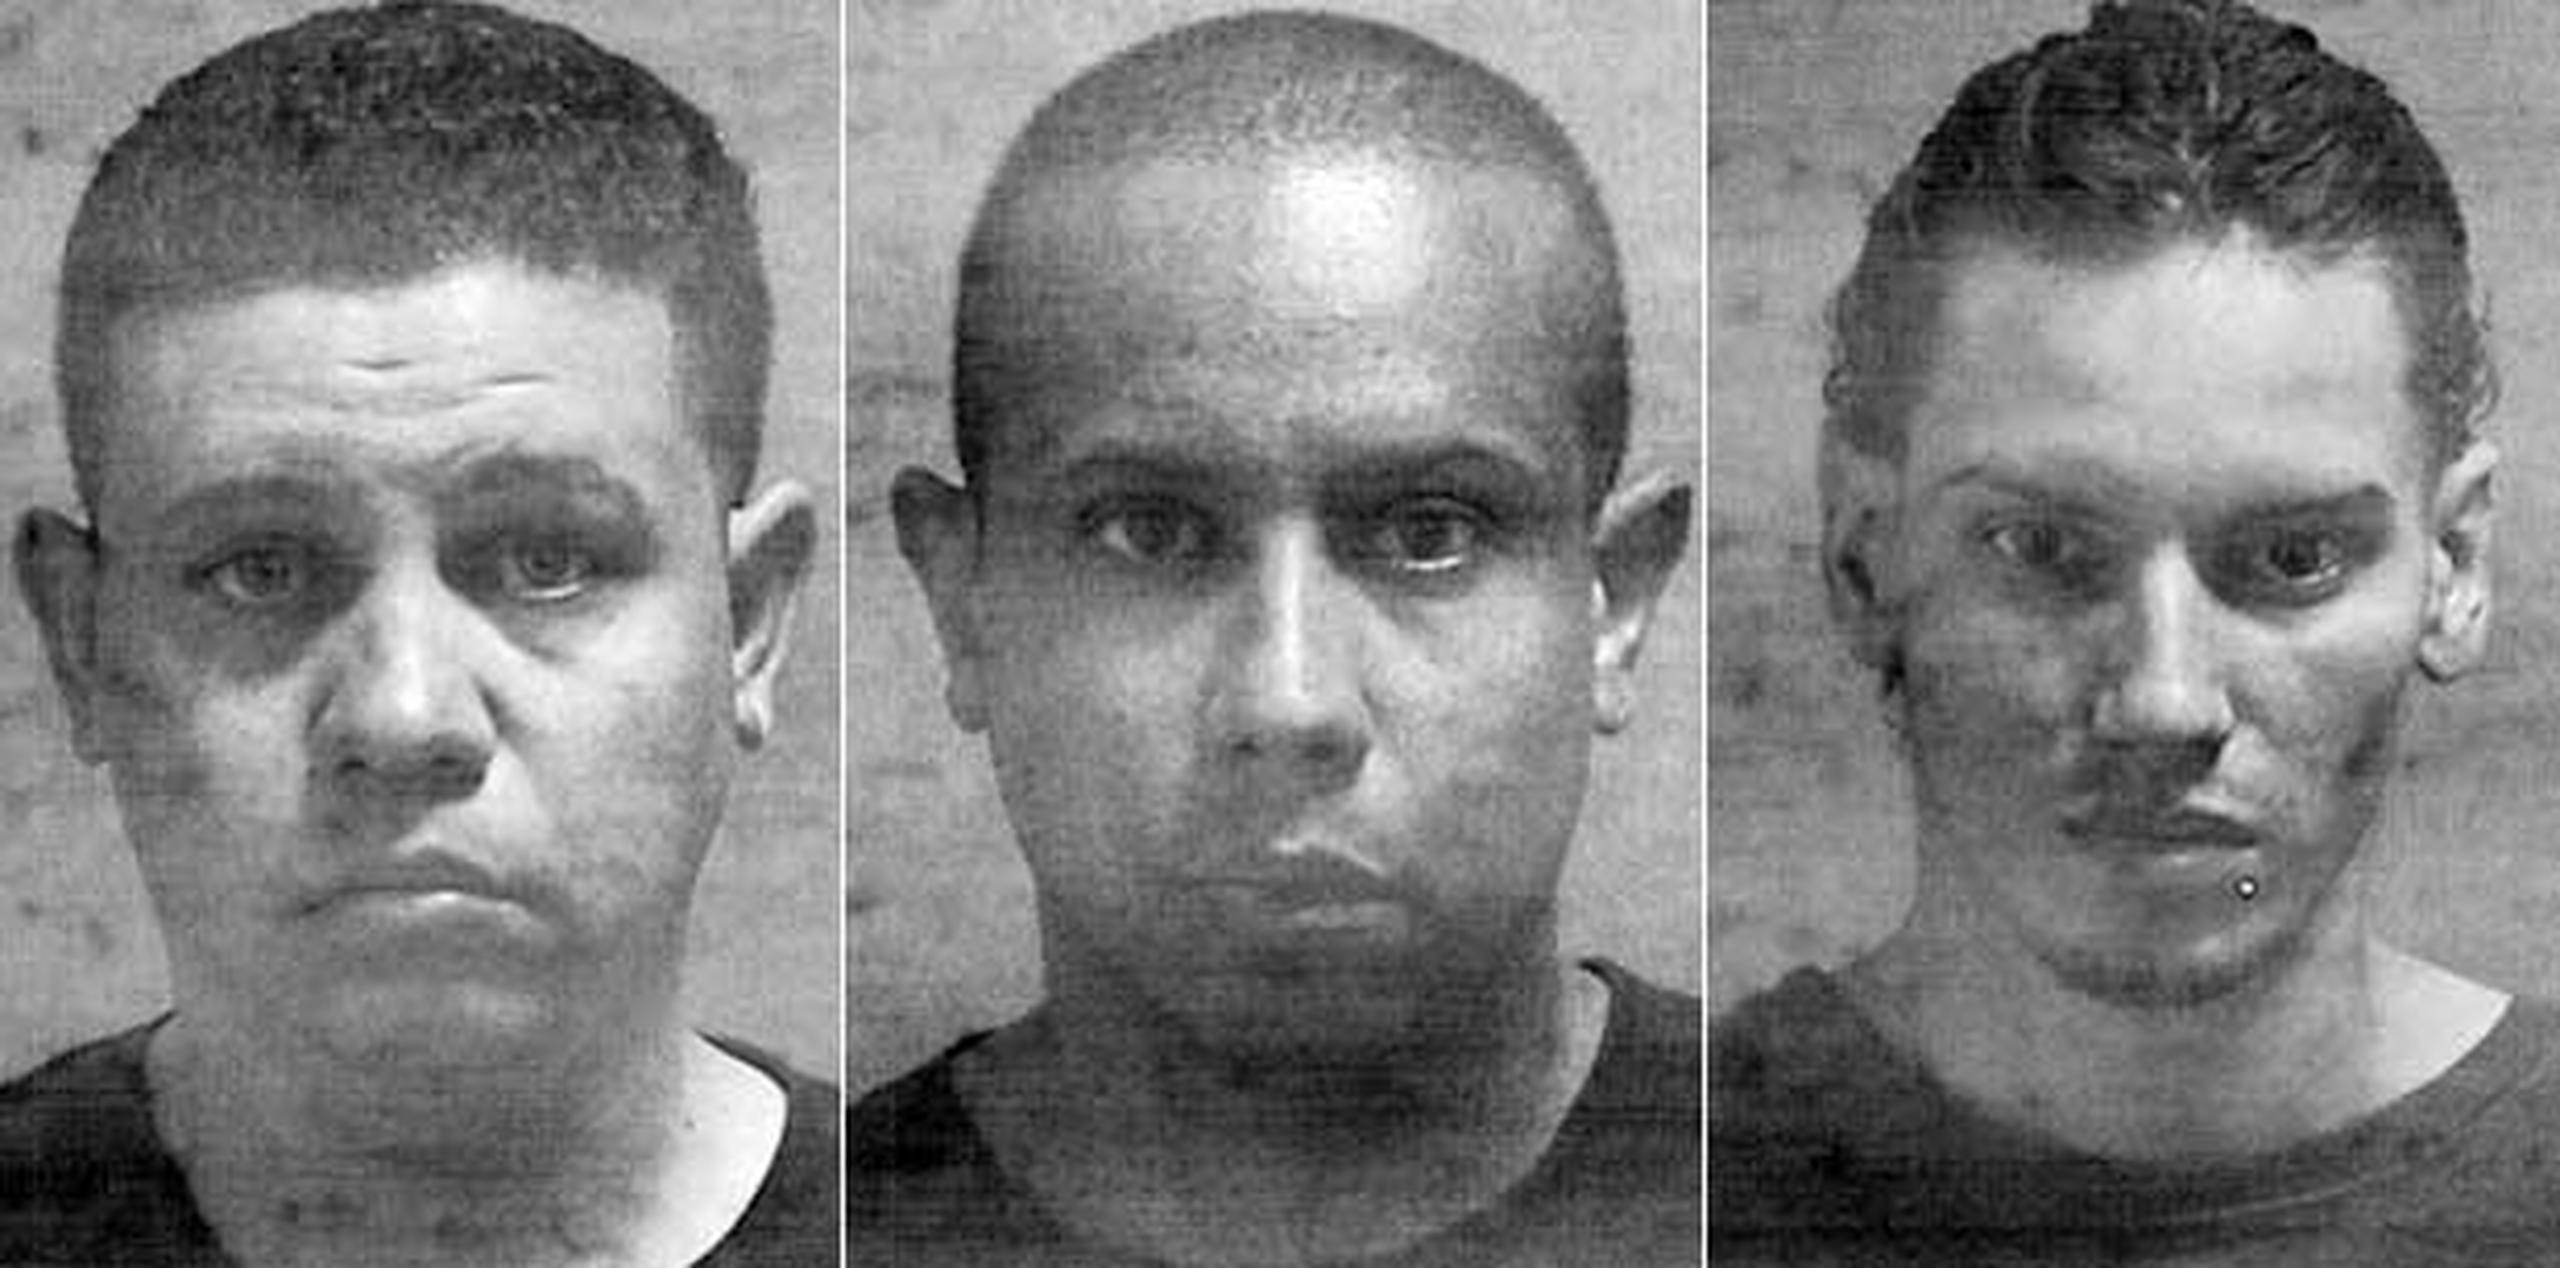 Los sospehcosos han sido identificados como Jonathan Santiago Negrón,  Waldemar Santiago Negrón y Kentenich Colón Colondres.